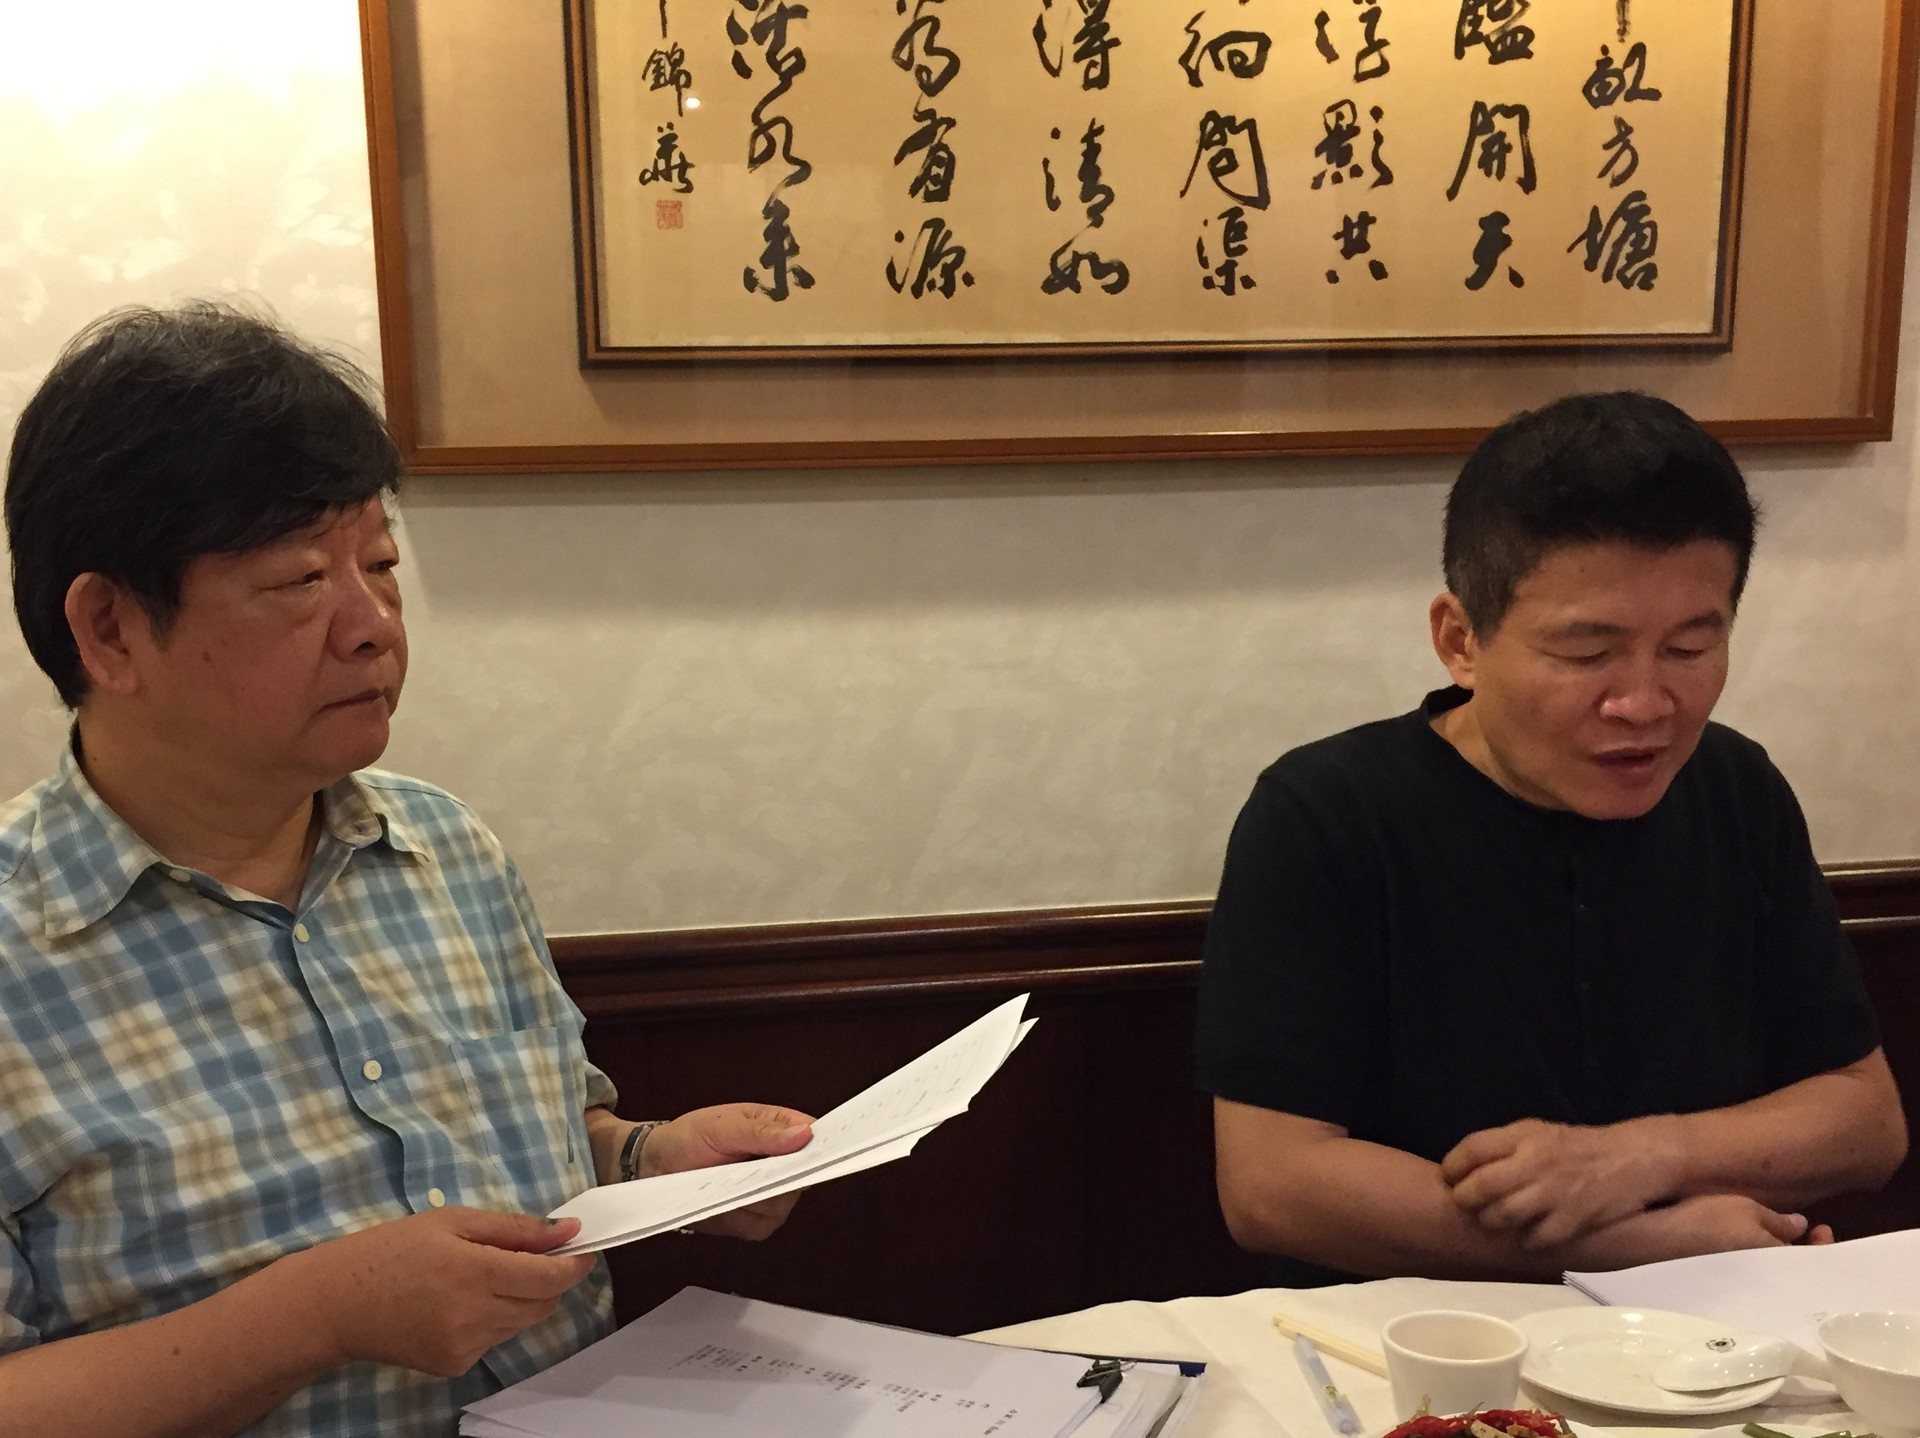 評審委員討論作品。左：李瑞騰教授，右：詩人羅智成